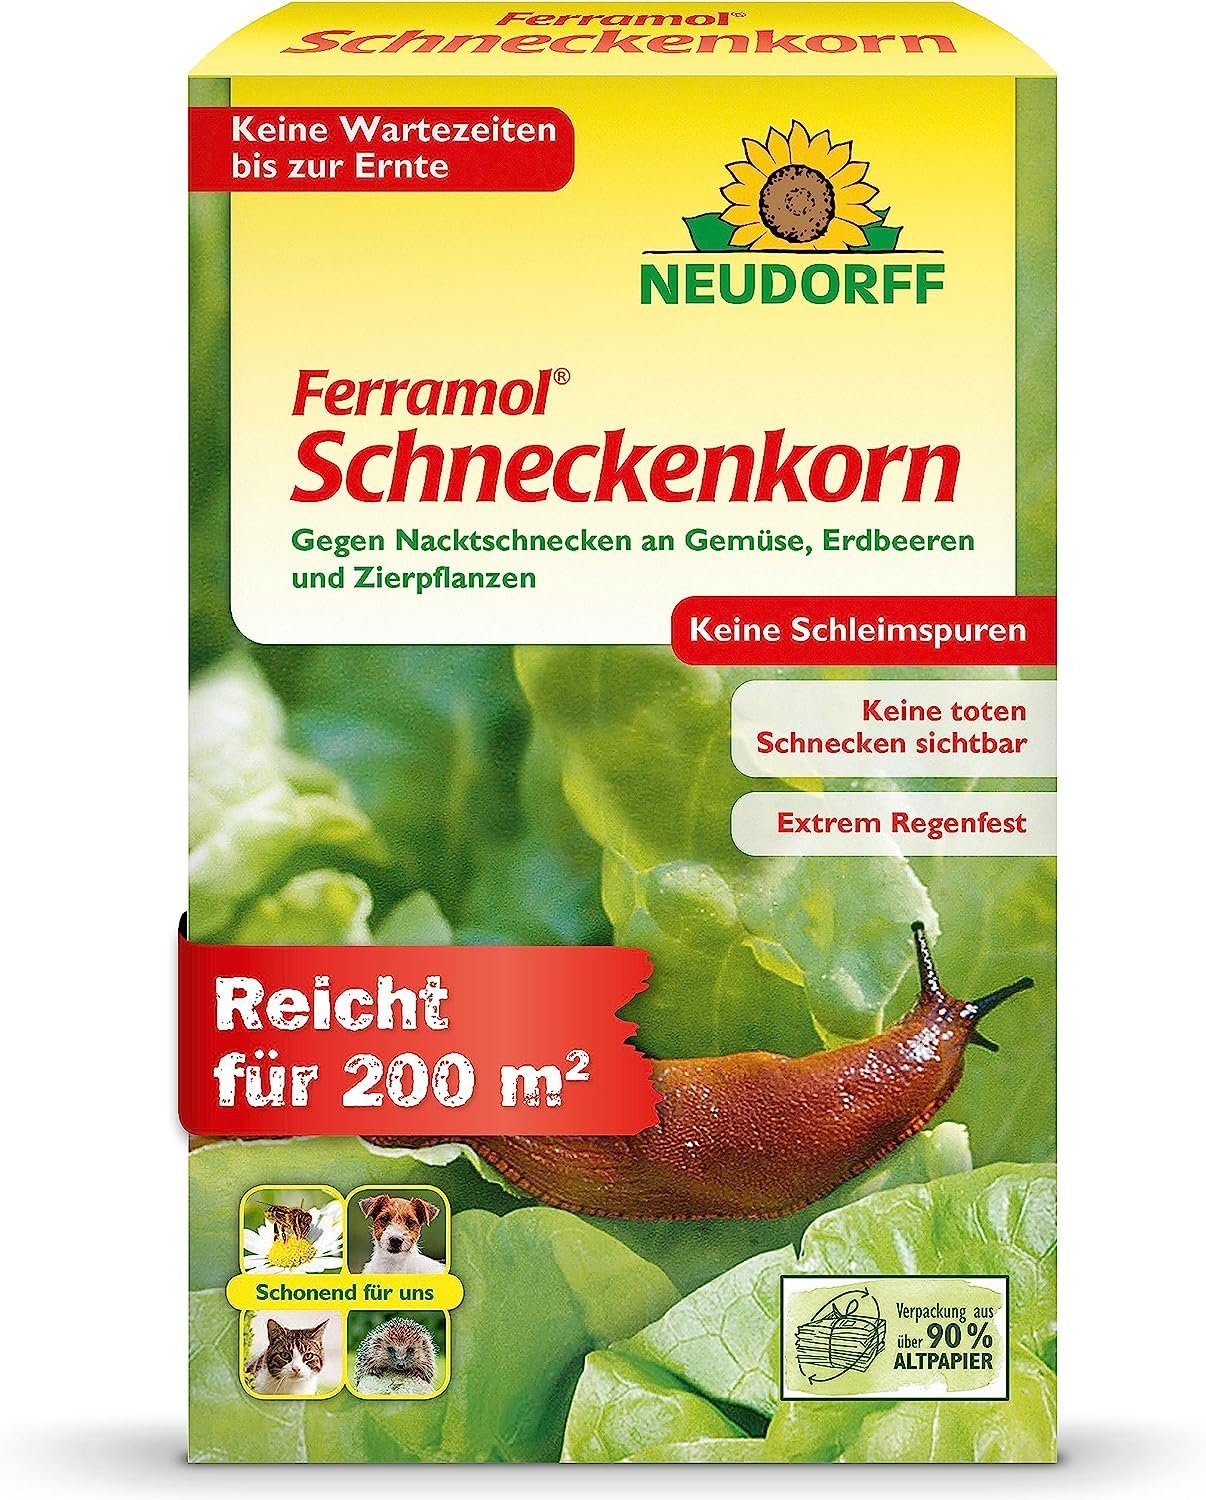 Neudorff Schneckenkorn Ferramol, 1000 g, Zuverlässig Schnecken bekämpfen